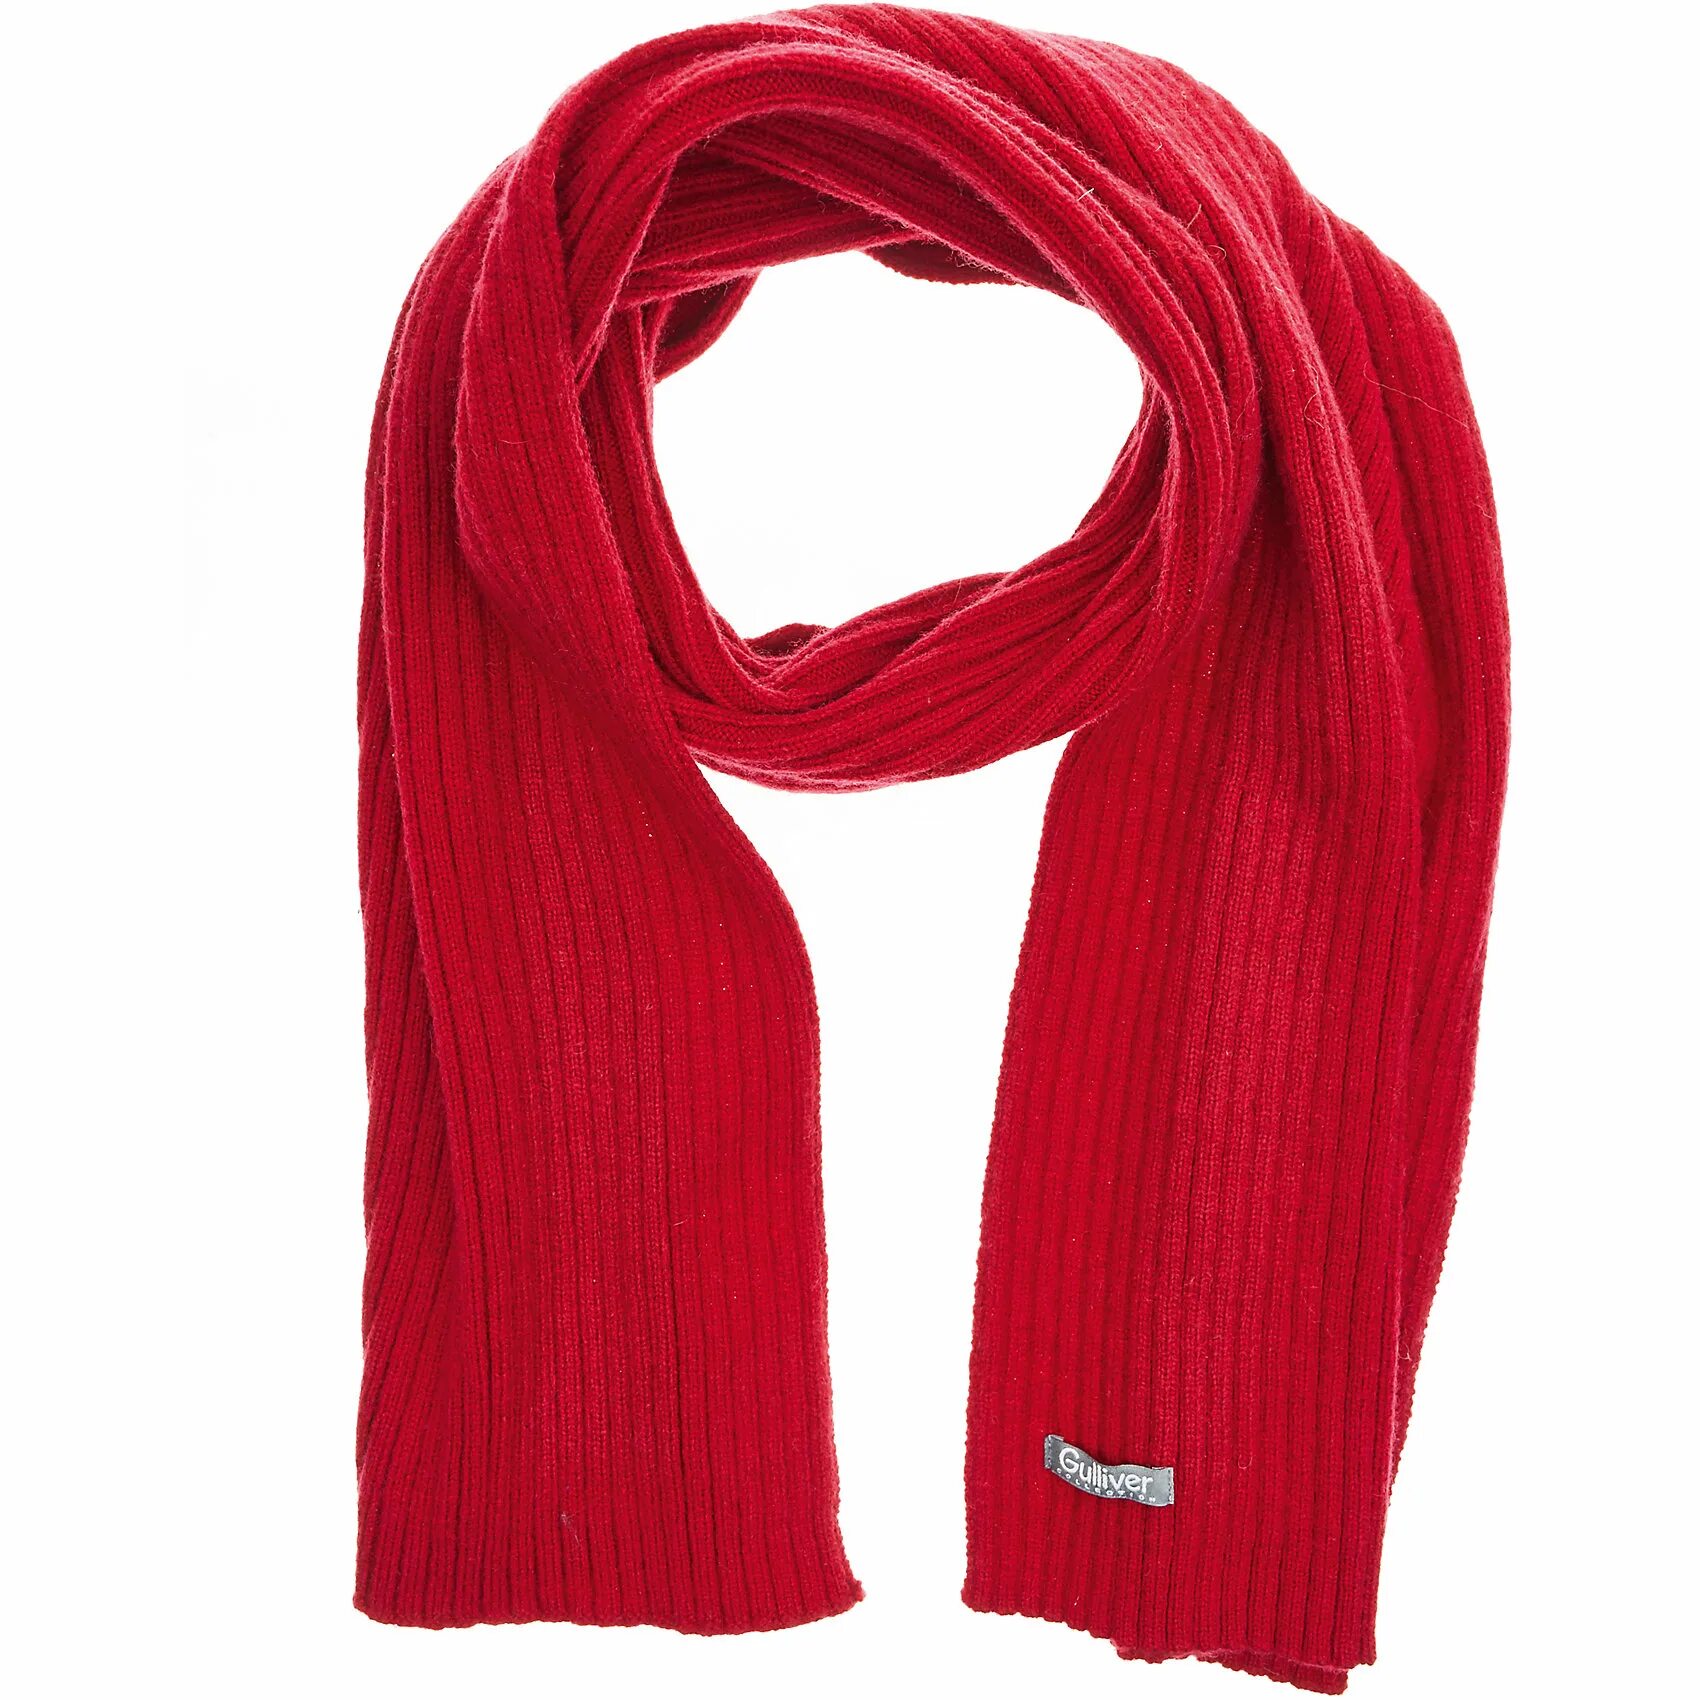 Шарф. Красный шарфик. Красный вязаный шарф. Шарф Gulliver.